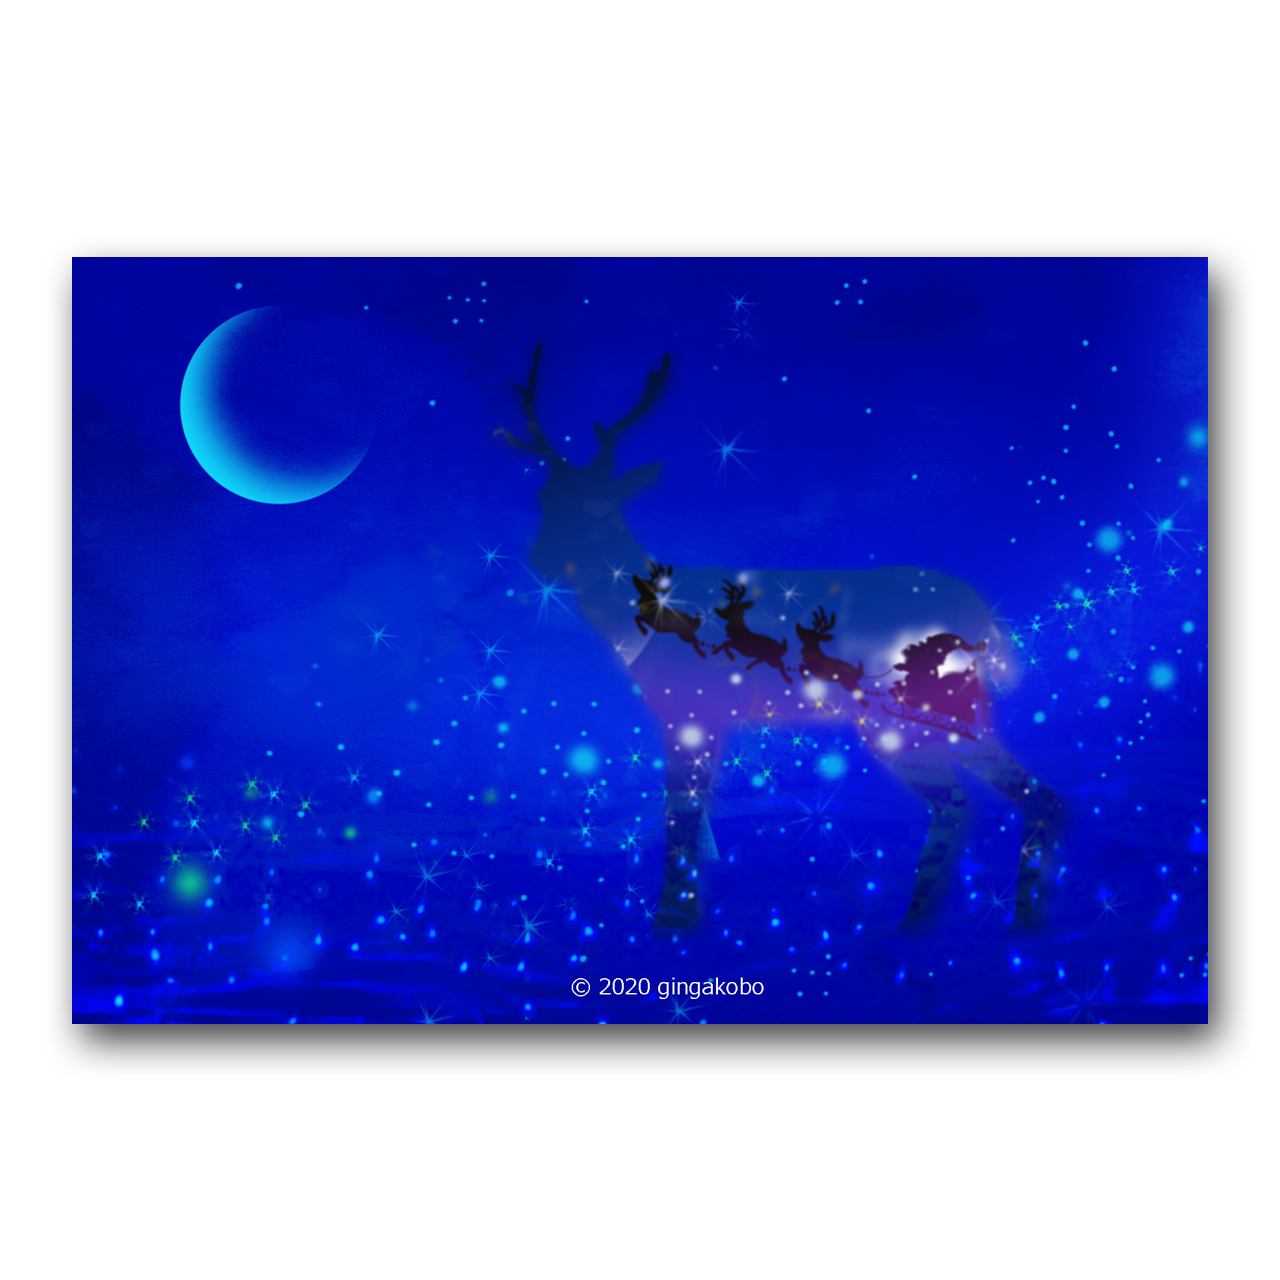 童話なクリスマス サンタクローズ トナカイ クリスマスツリー ほっこり癒しのイラストポストカード2枚組 No 1213 Iichi ハンドメイド クラフト作品 手仕事品の通販